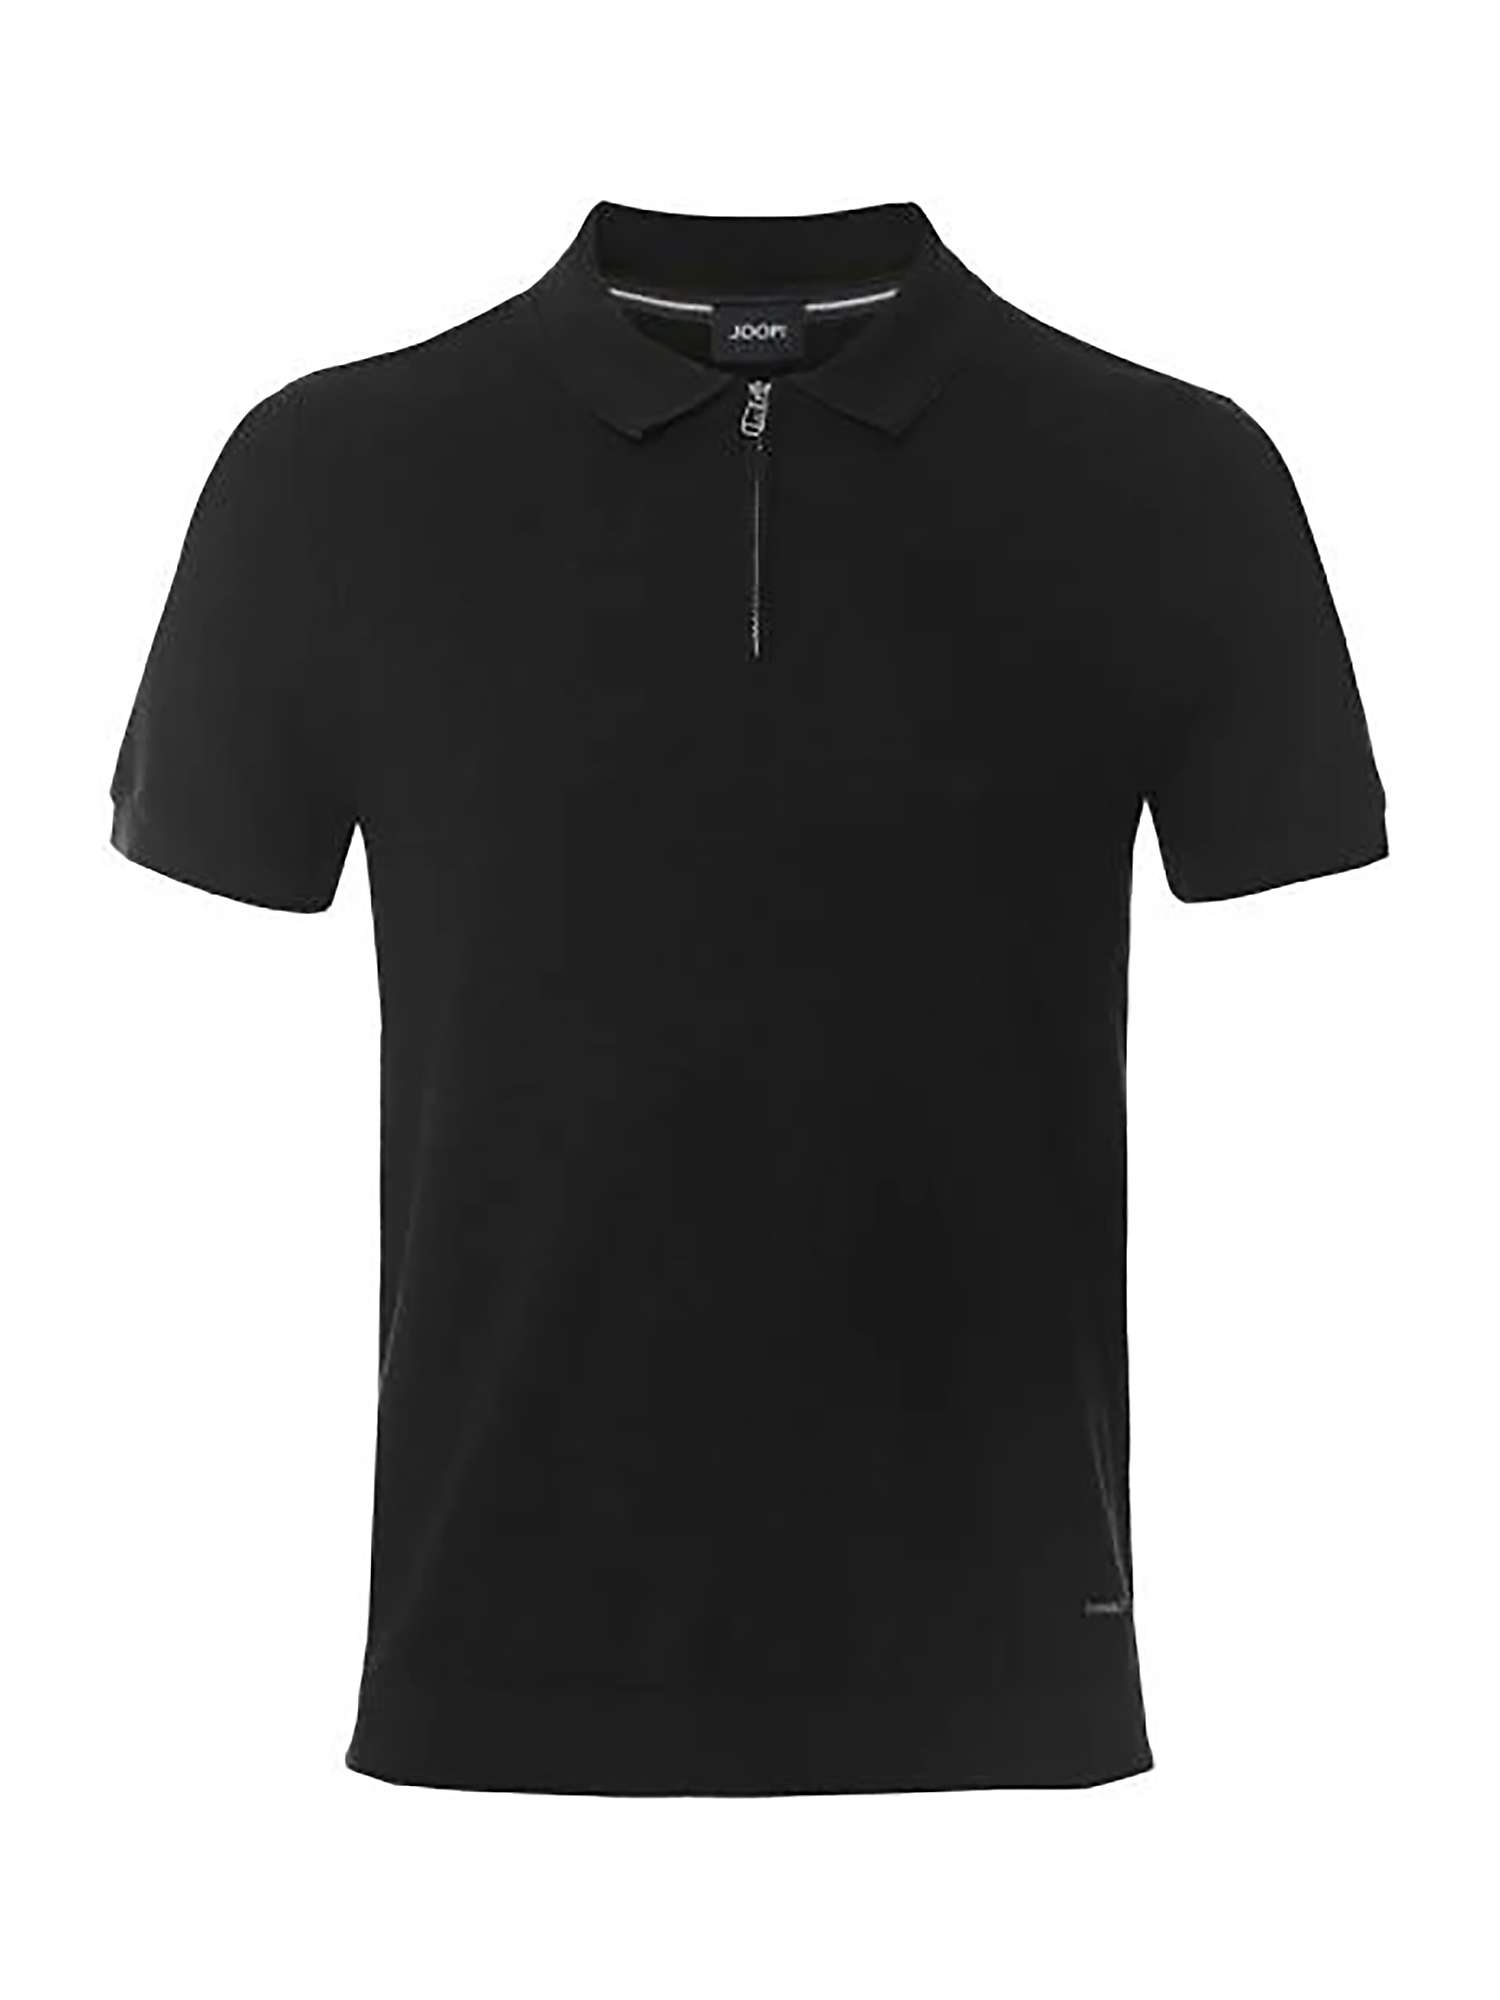 Buy JOOP! Vanco Zip Neck Polo Shirt, Black Online at johnlewis.com